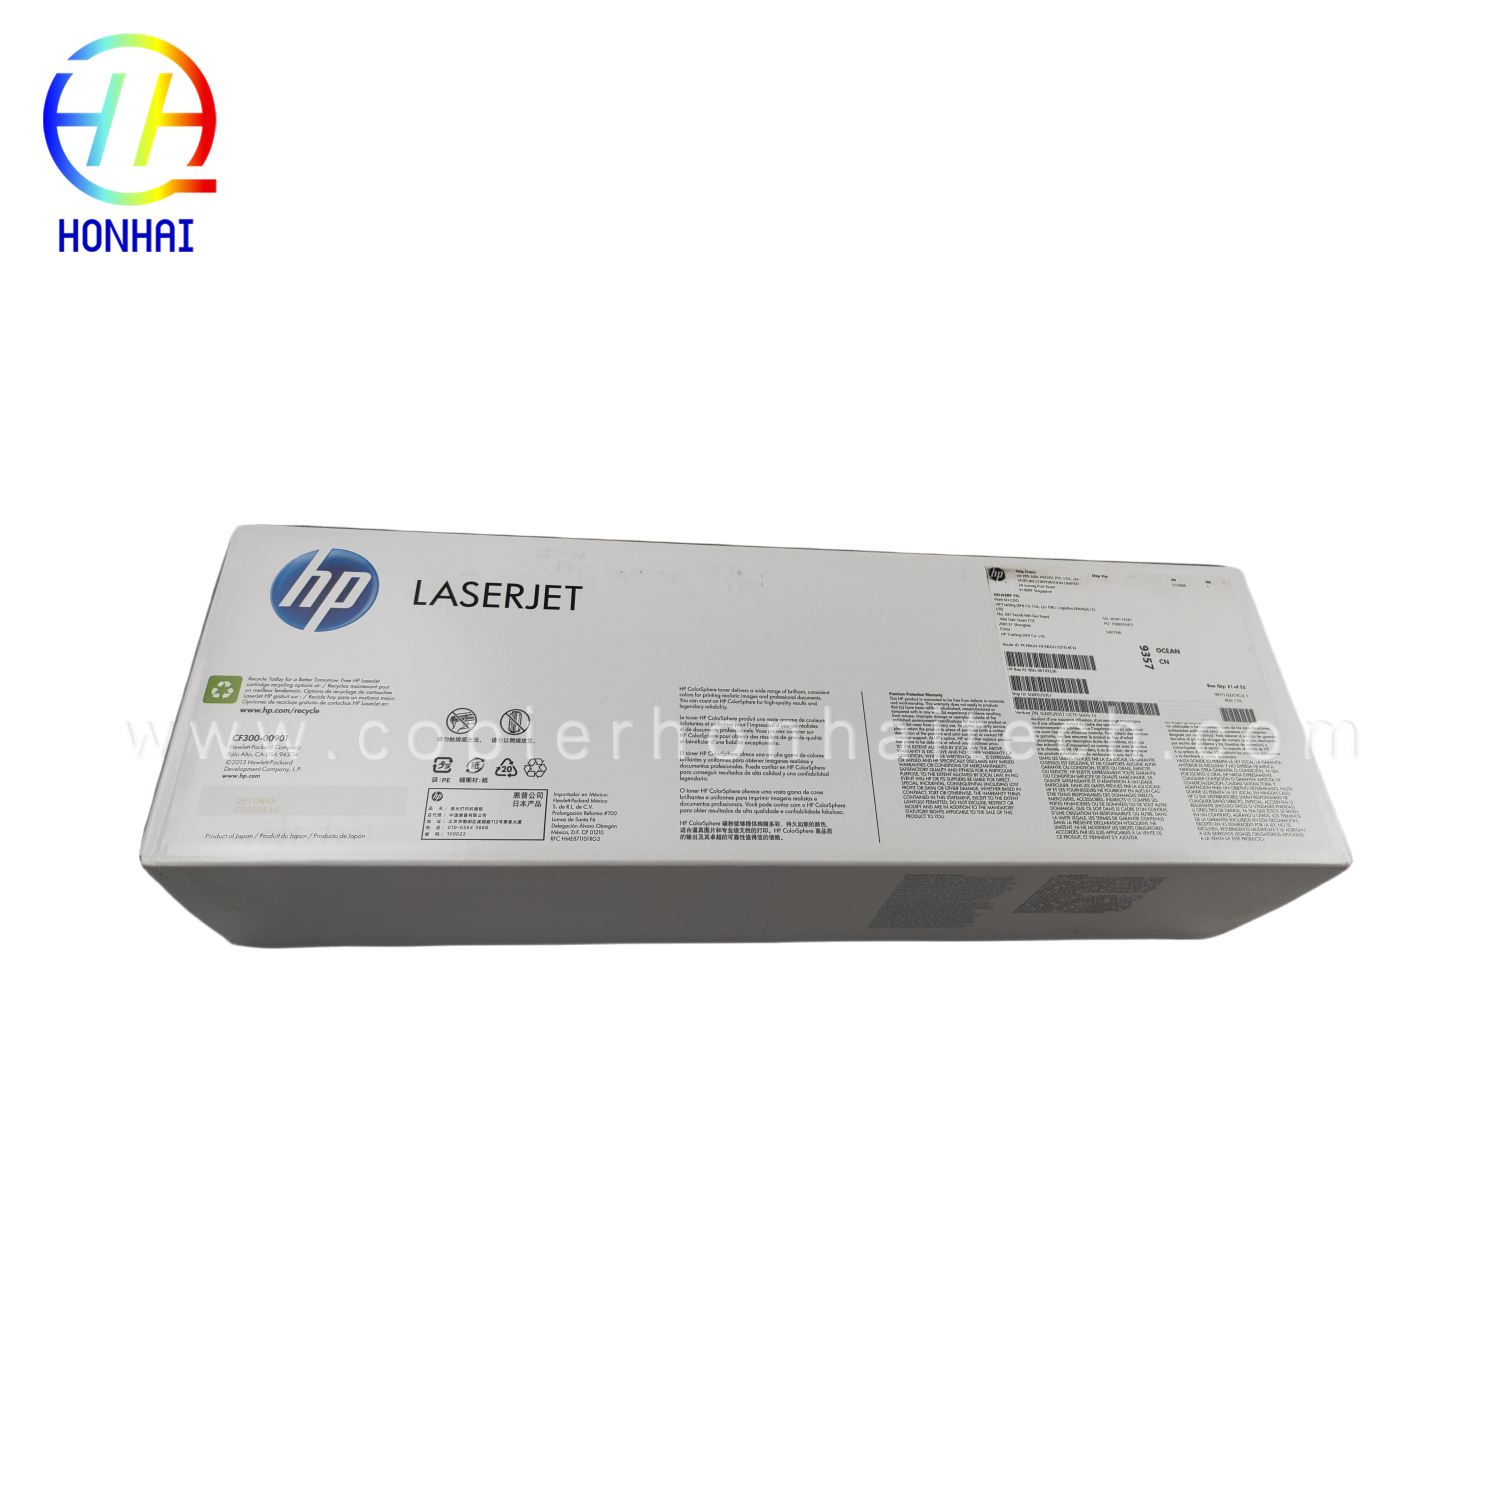 https://www.copierhonhaitech.com/origen-new-toner-cartridge-for-hp-mfp-m880-827a-cf301a-product/